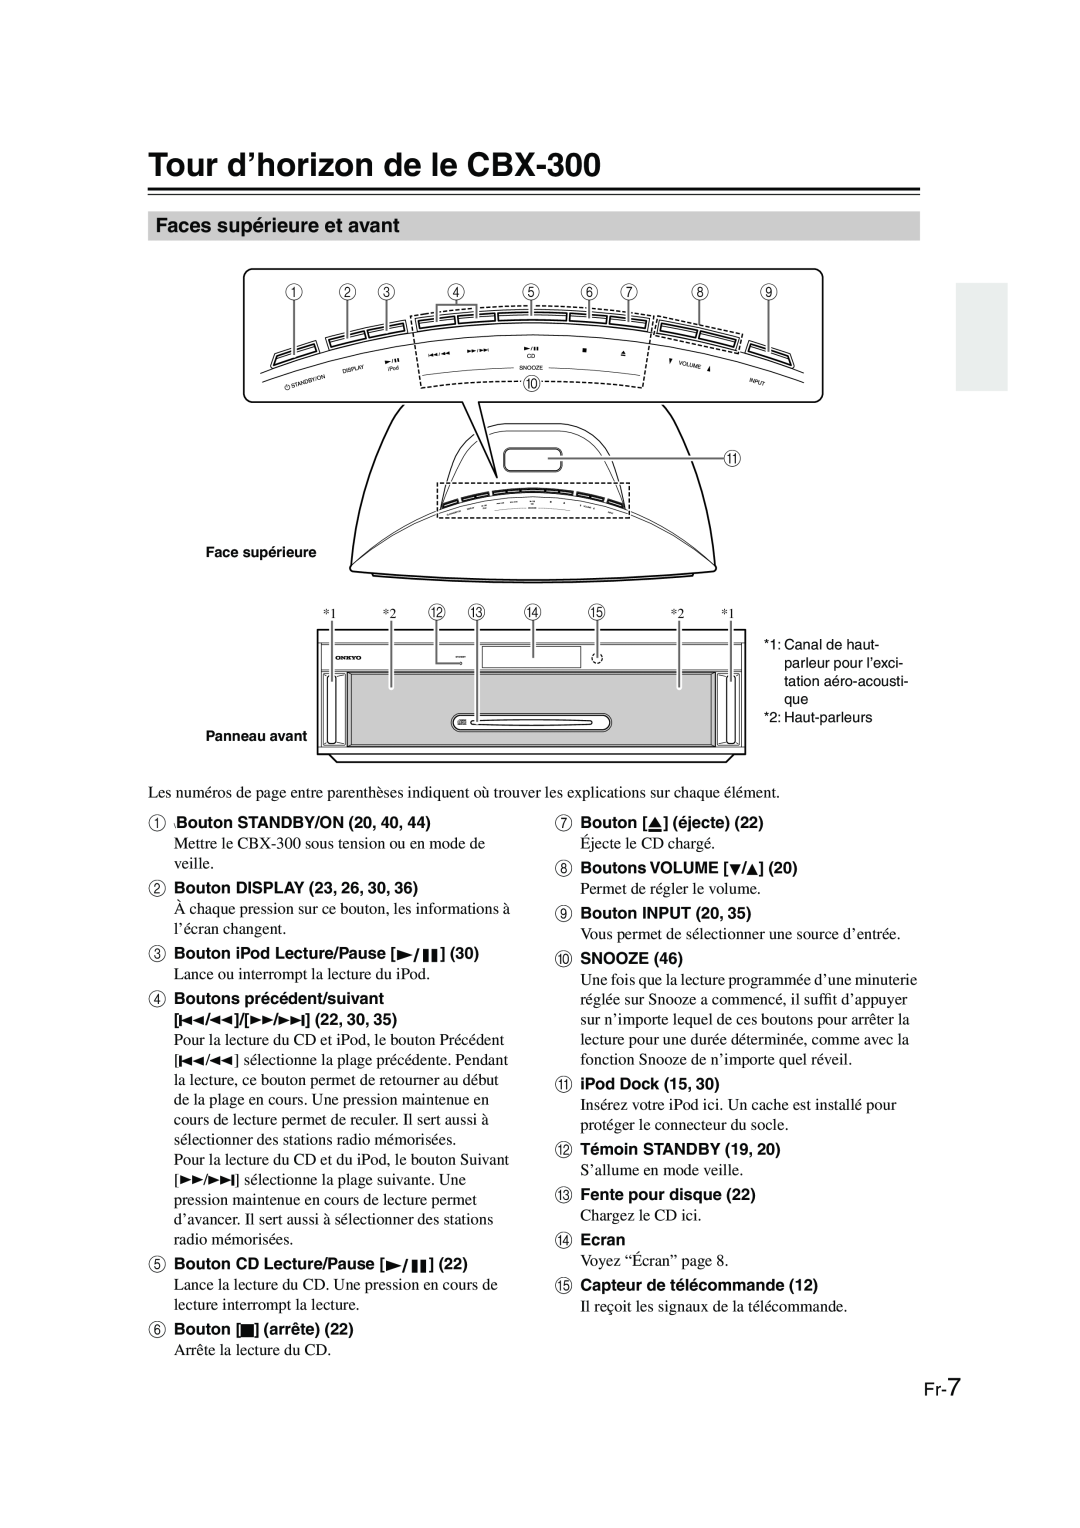 Onkyo instruction manual Tour d’horizon de le CBX-300, Faces supérieure et avant 